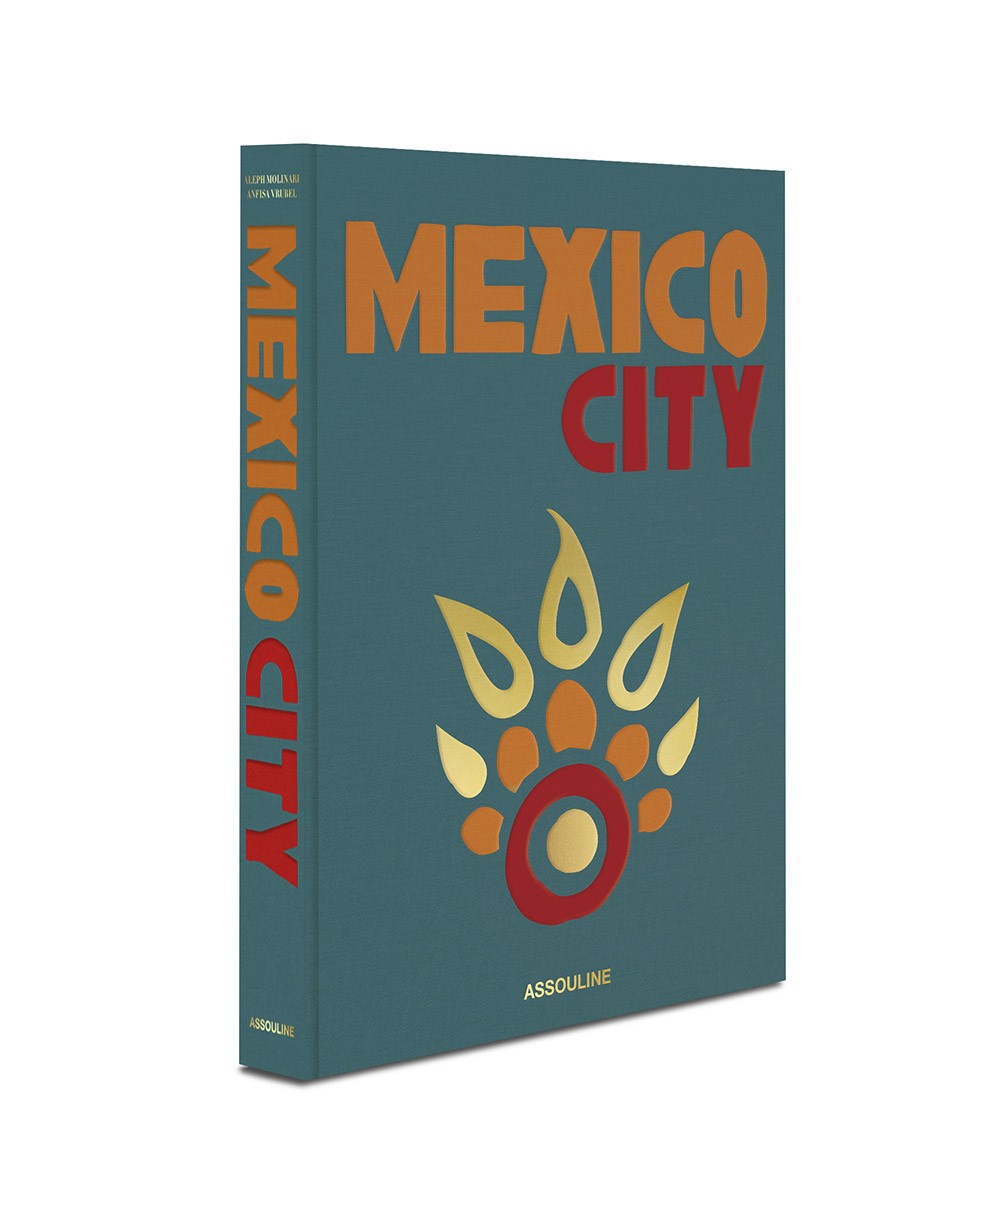 Der Bildband Mexico City von Assouline von der Seite